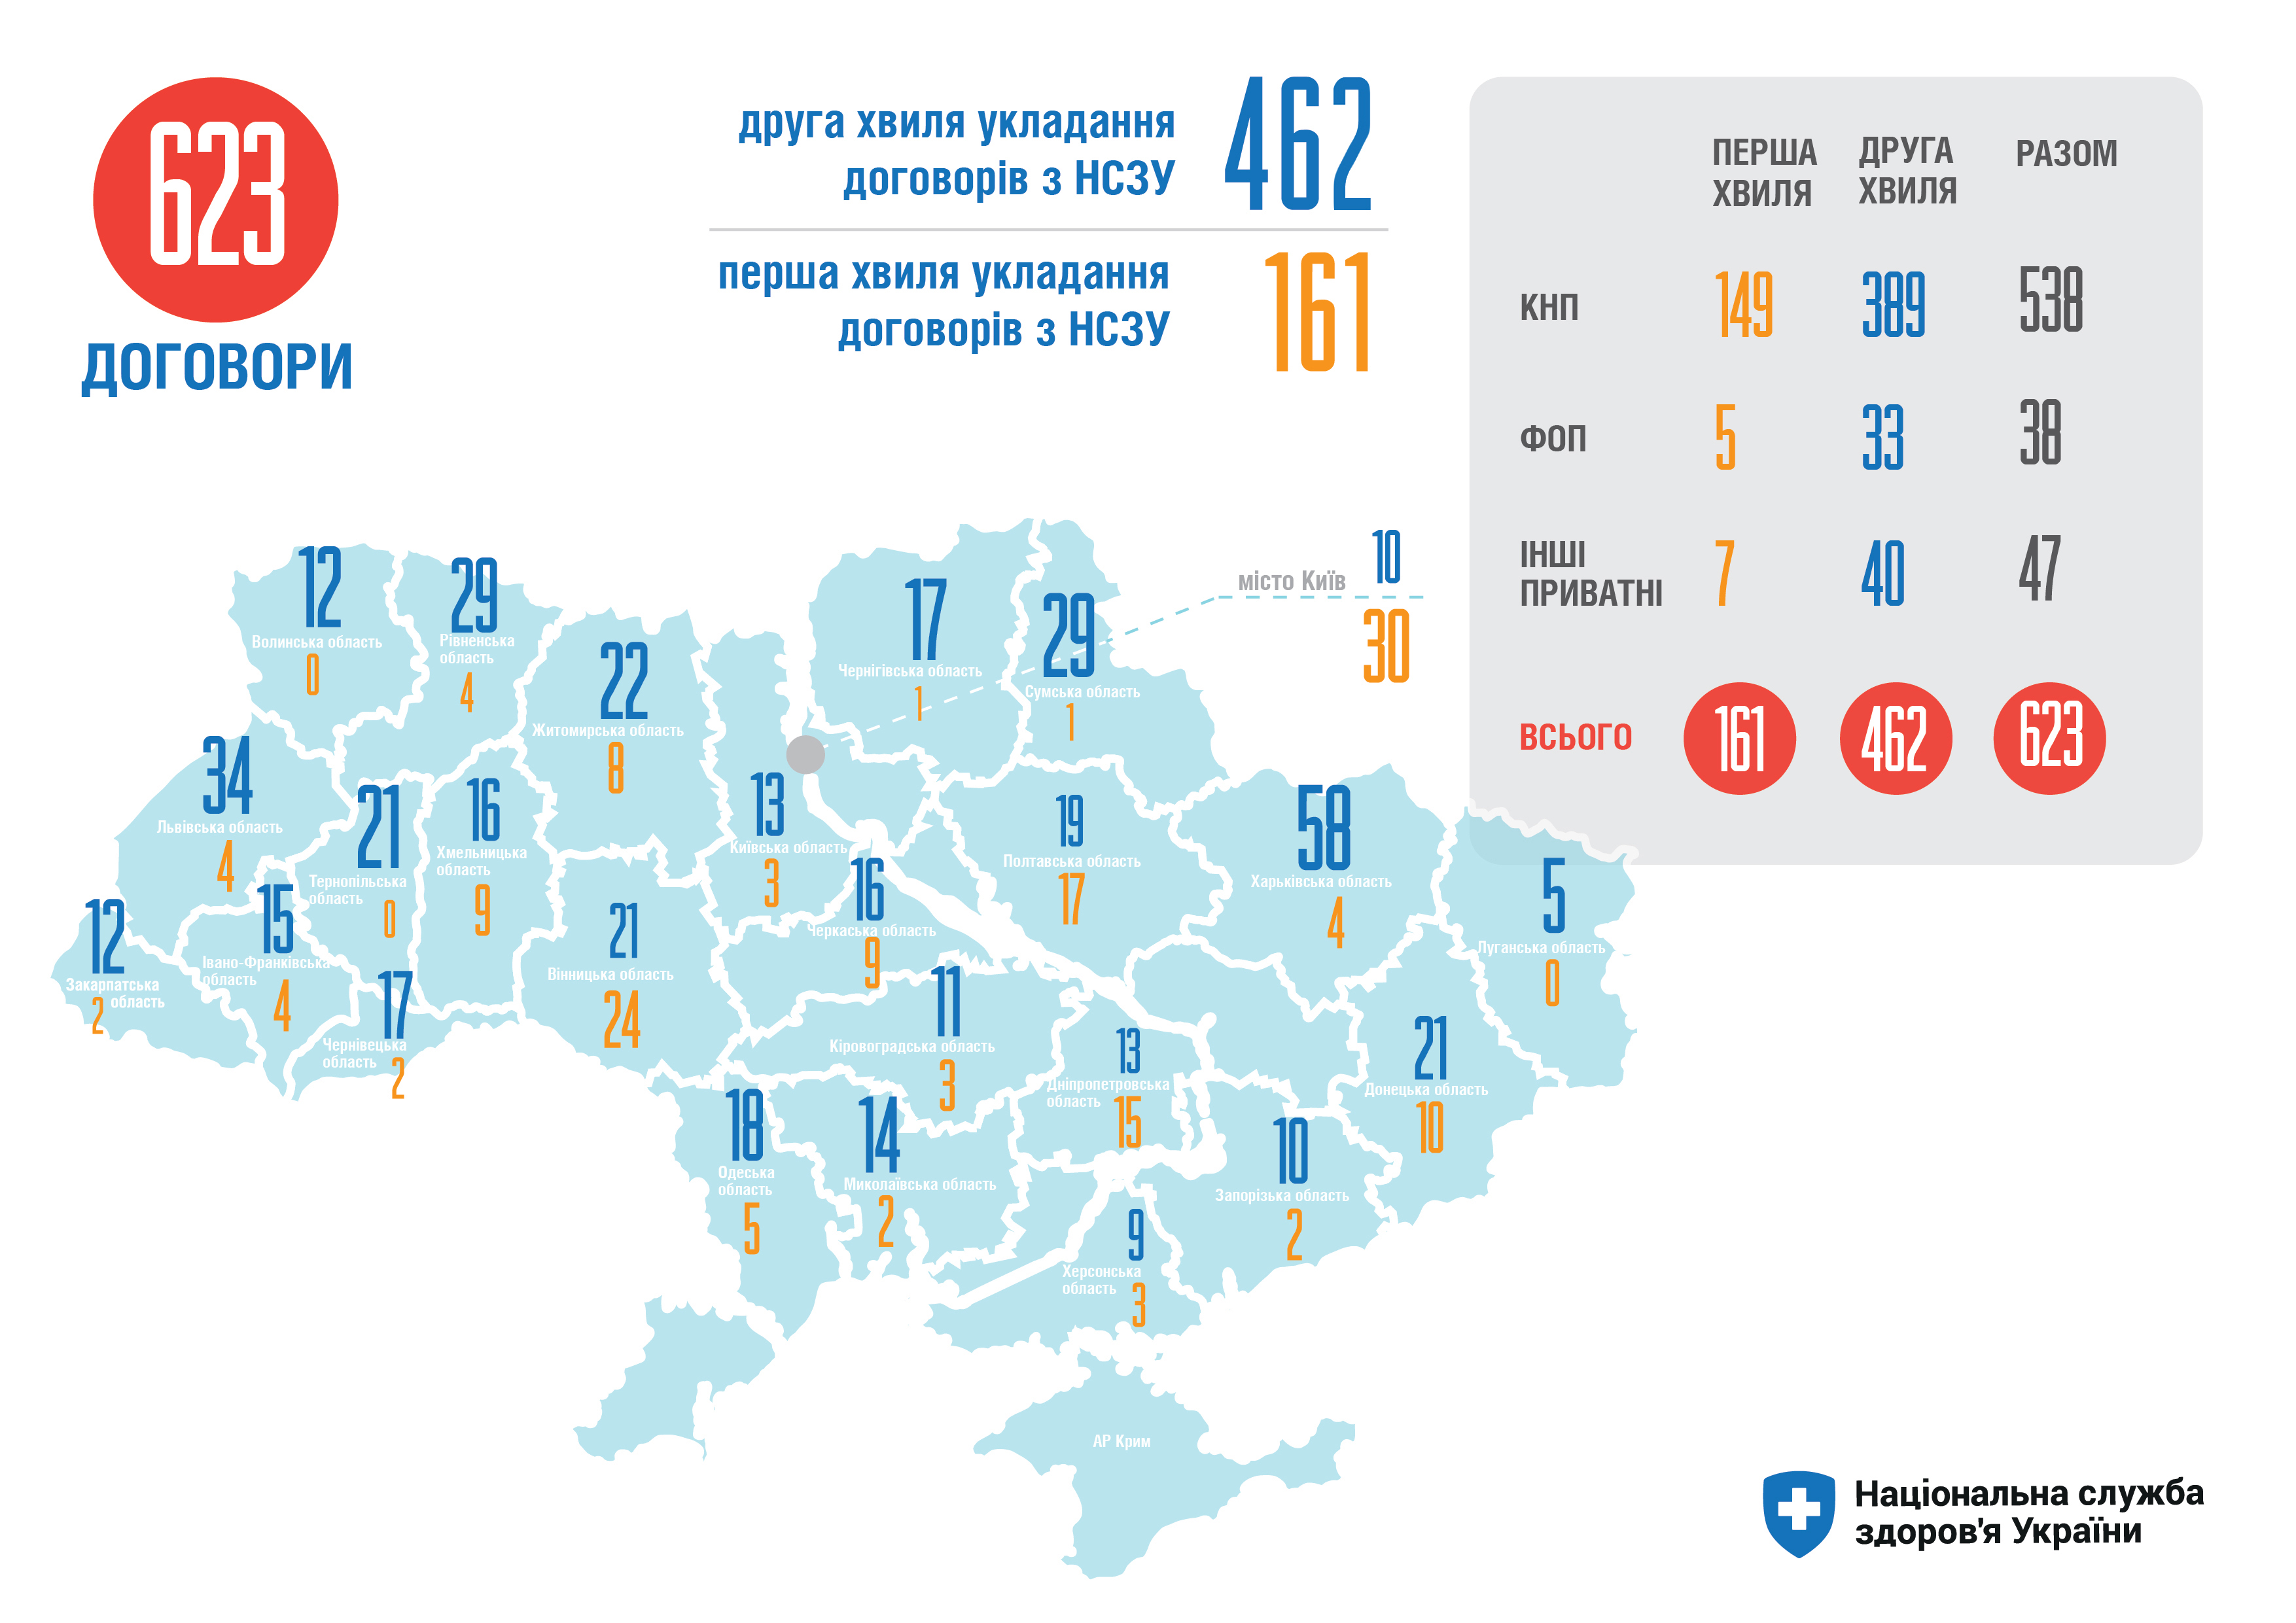 156 медзакладів Західної України підписали договори з Нацслужбою здоров’я